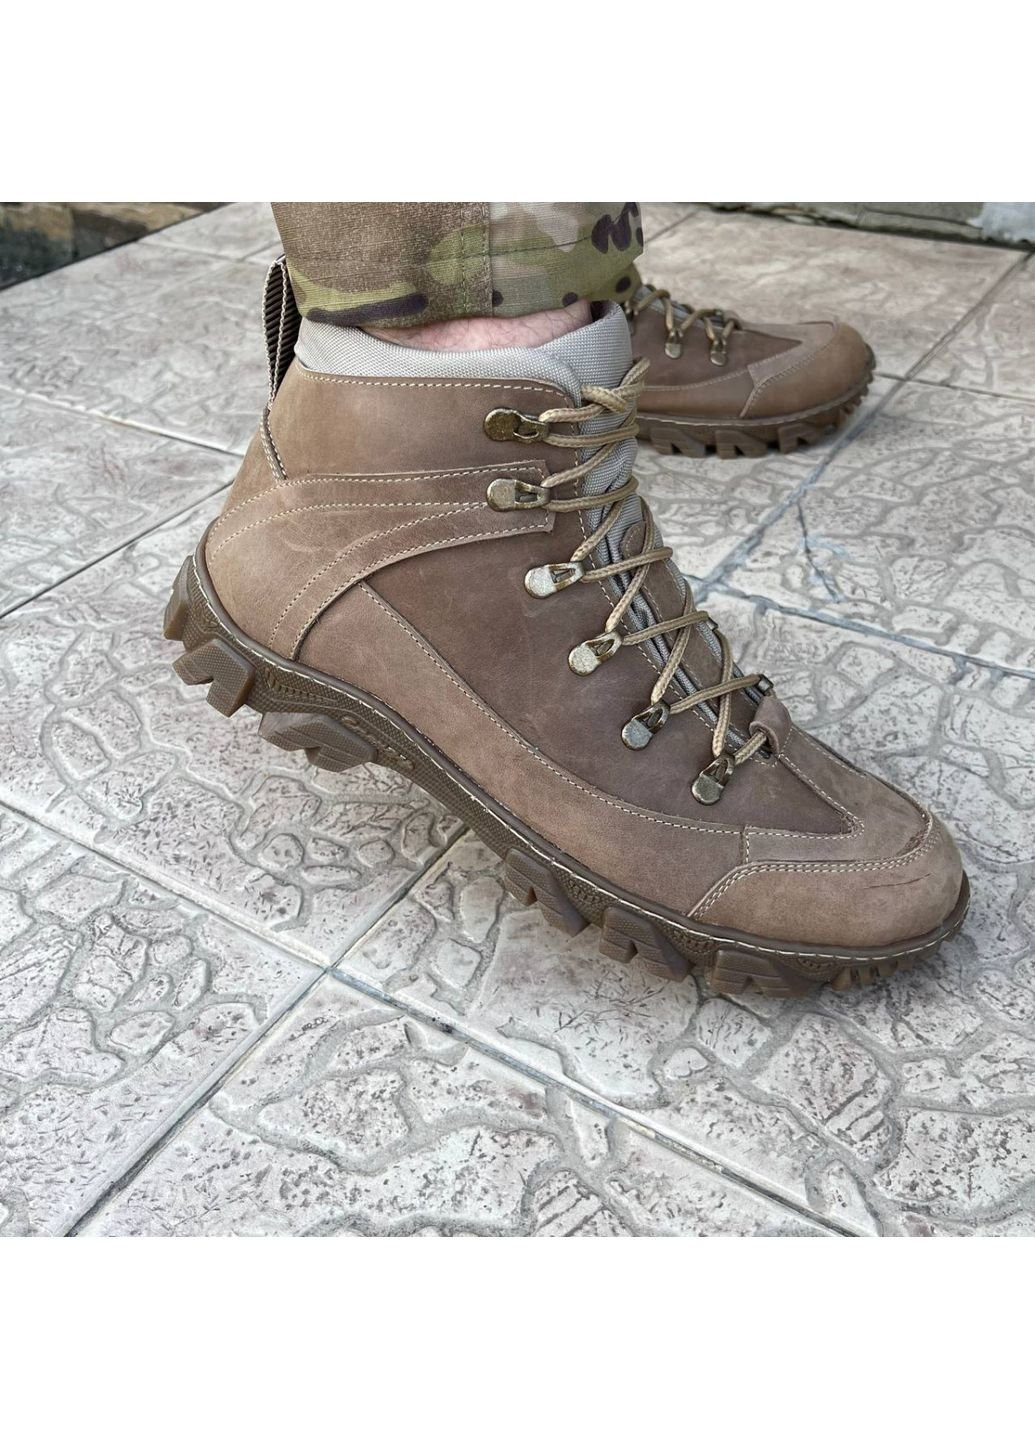 Коричневые осенние ботинки военные тактические всу (зсу) 7522 43 р 28,5 см коричневые KNF